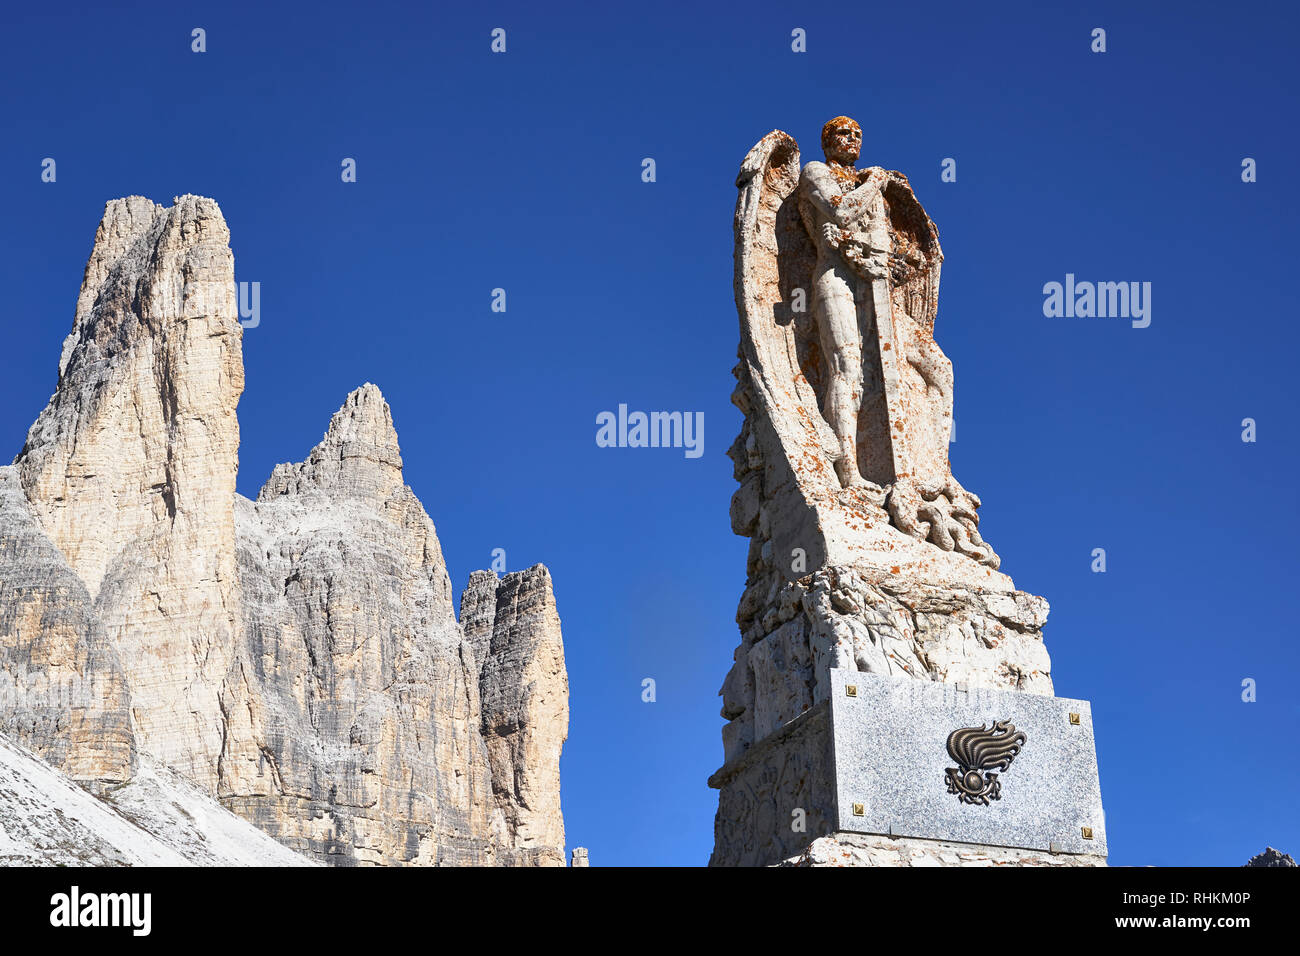 Guerra Mondiale 1 Memoriale di guerra con una spada che trasportano angelo, con Tre Cime di Lavaredo in background, Misurina, Dolomiti, Veneto, Italia. Foto Stock